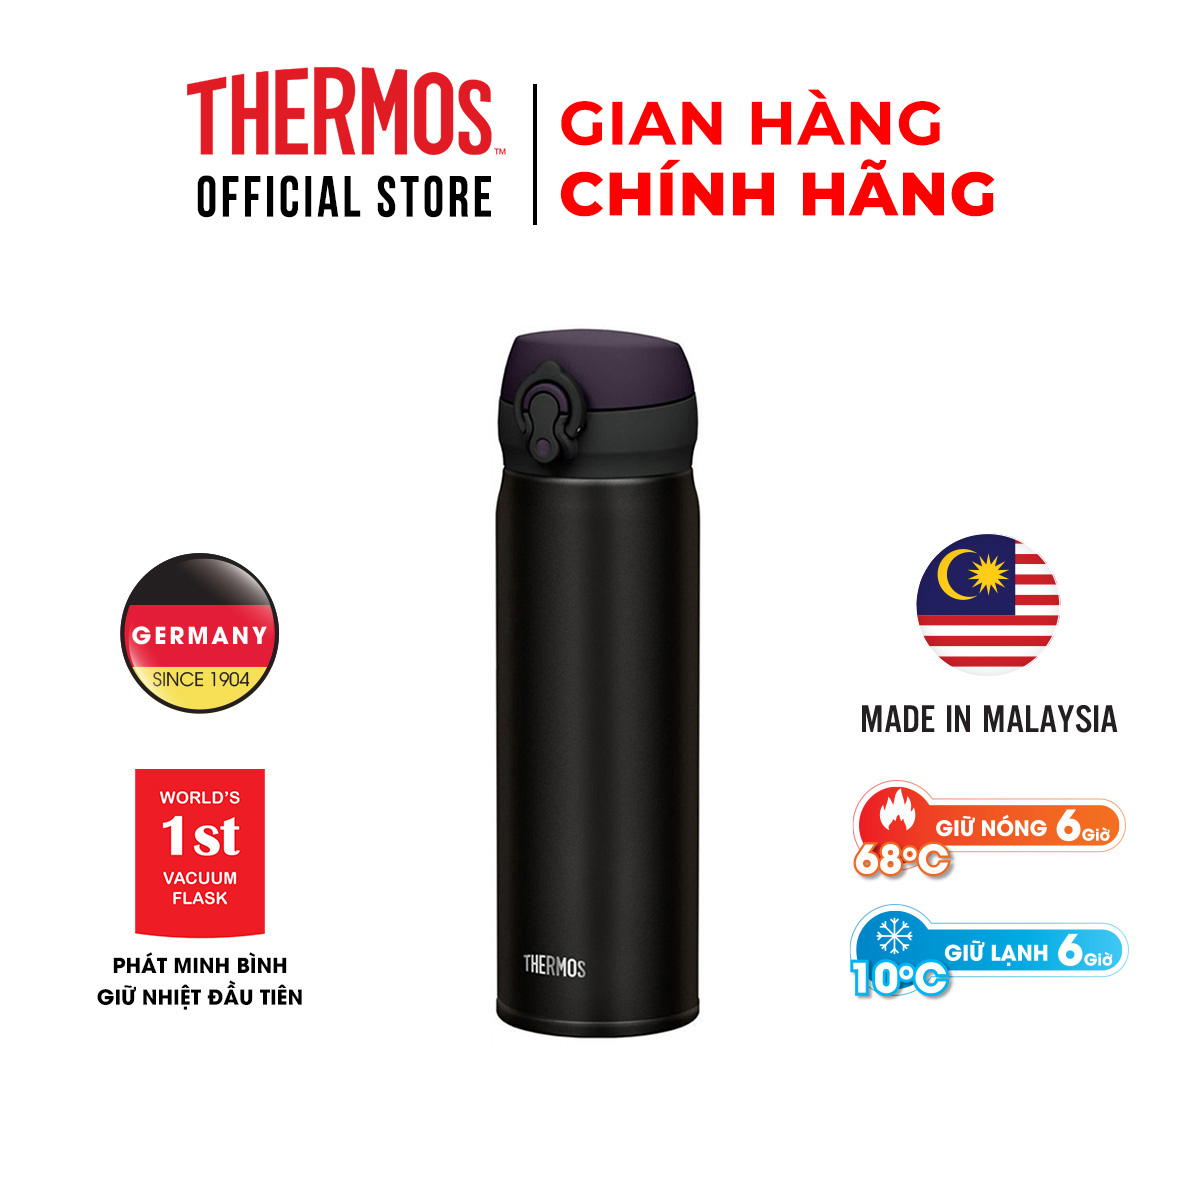 Bình giữ nhiệt Nhật Bản Thermos nút bấm. Hàng chính hãng sản xuất tại Malaysia. Bình giữ nhiệt Thermos trọng...